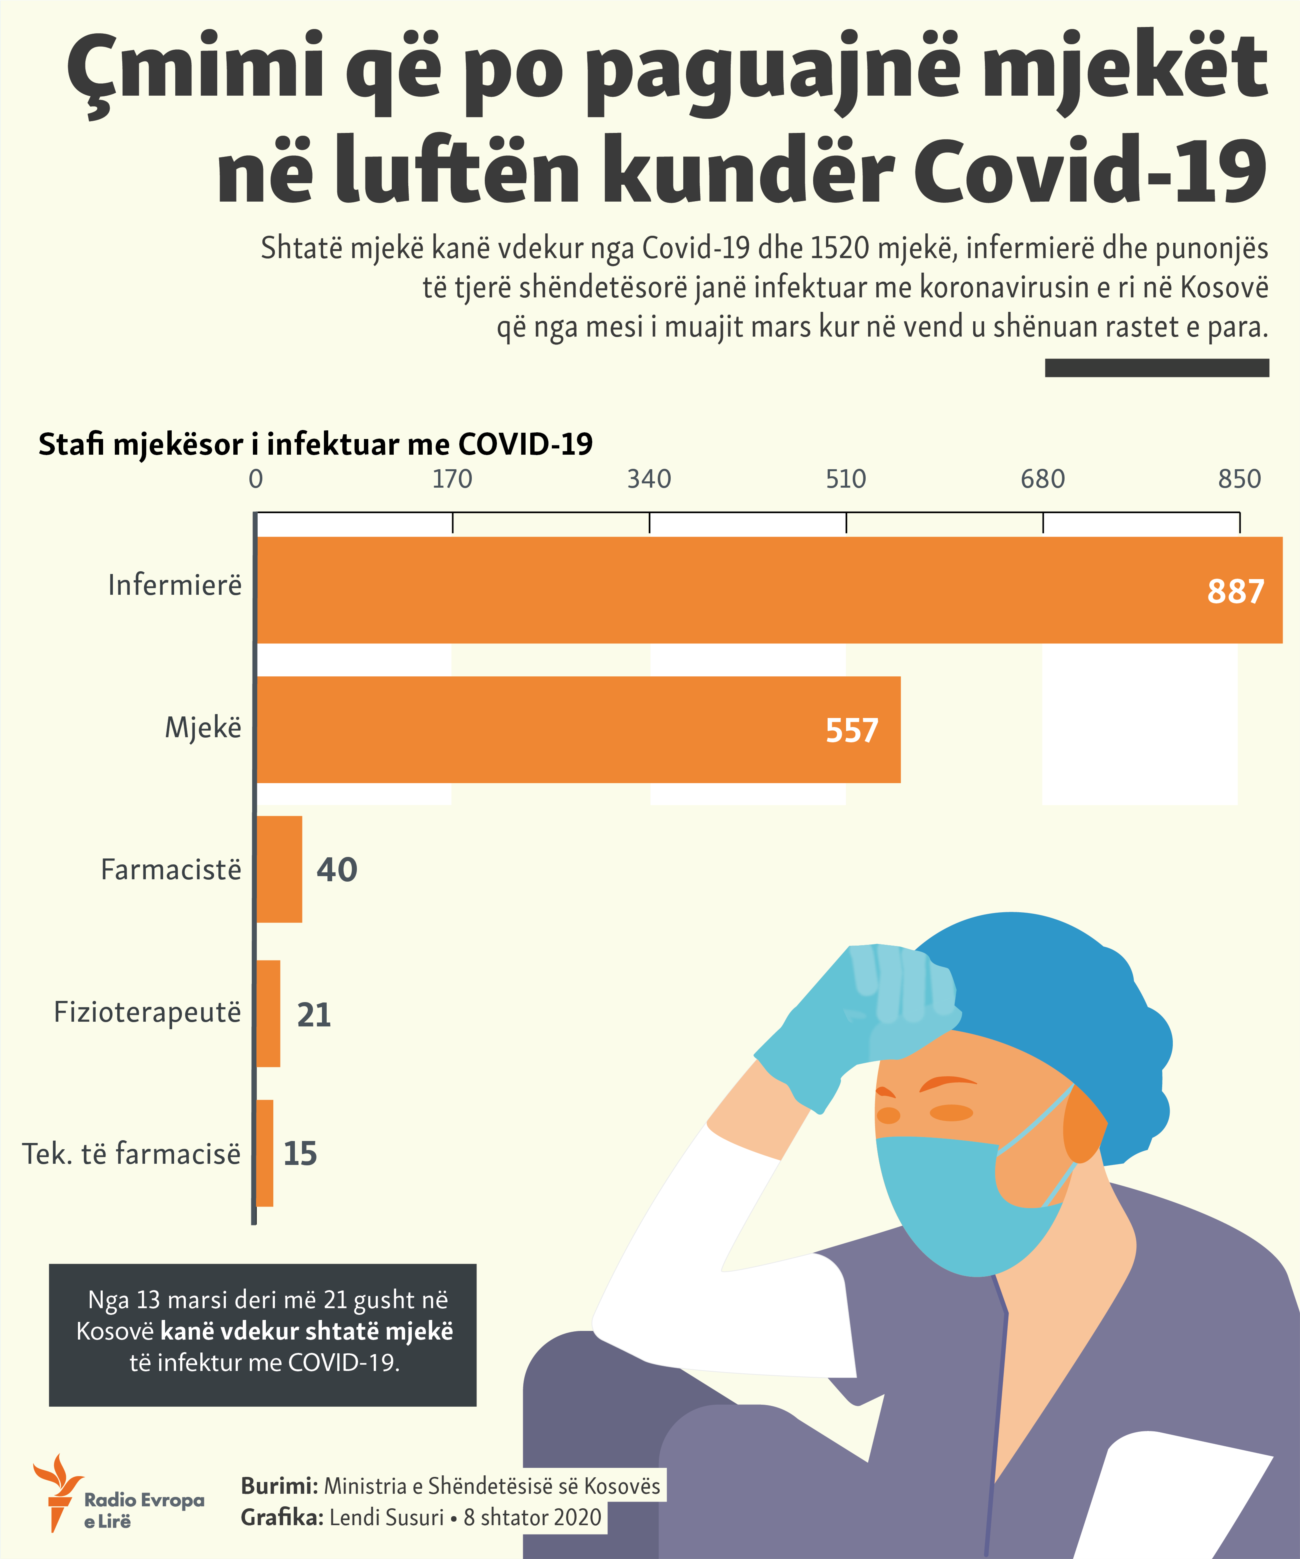 Kosovo: Info graphic - medical personnel in Kosovo with COVID-19